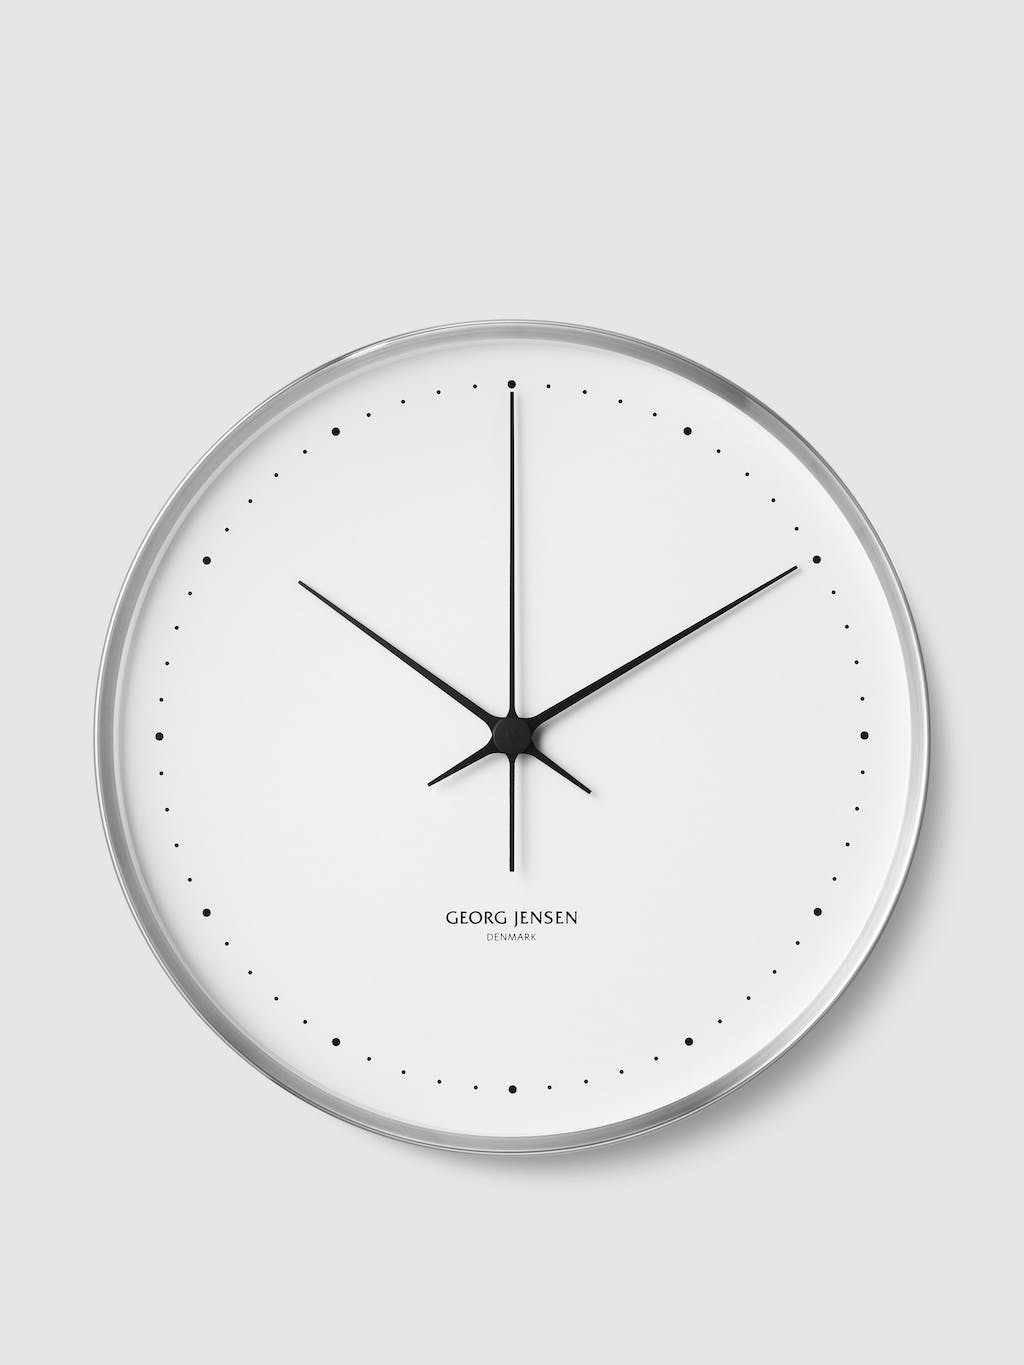 Henning Koppel Wall Clock